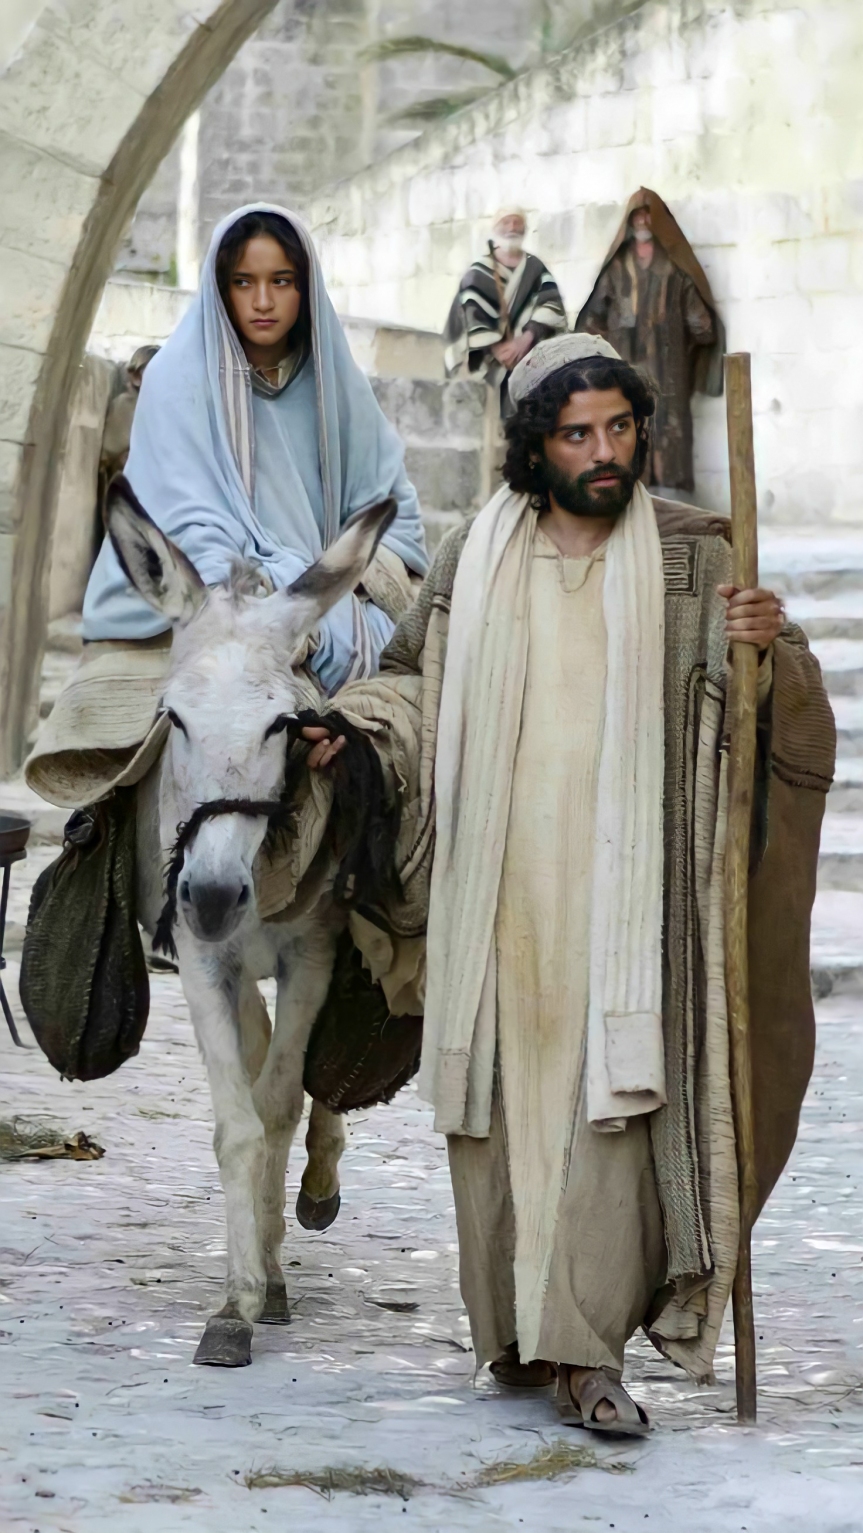 Journey to Bethlehem | Joseph and Mary